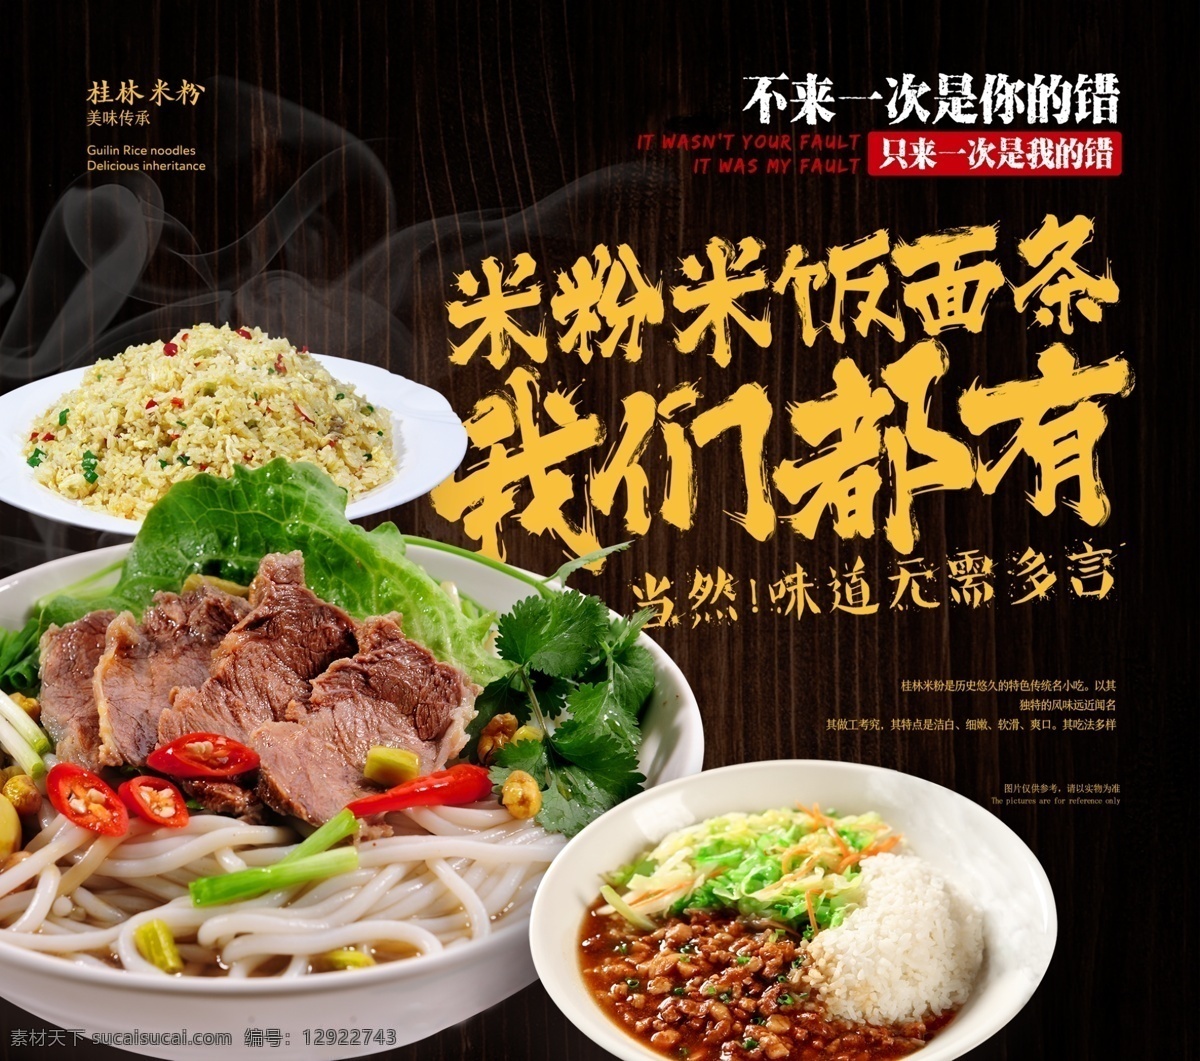 桂林米粉海报 米粉 炒饭 海报 盖饭 美食 中餐 小吃 菜品